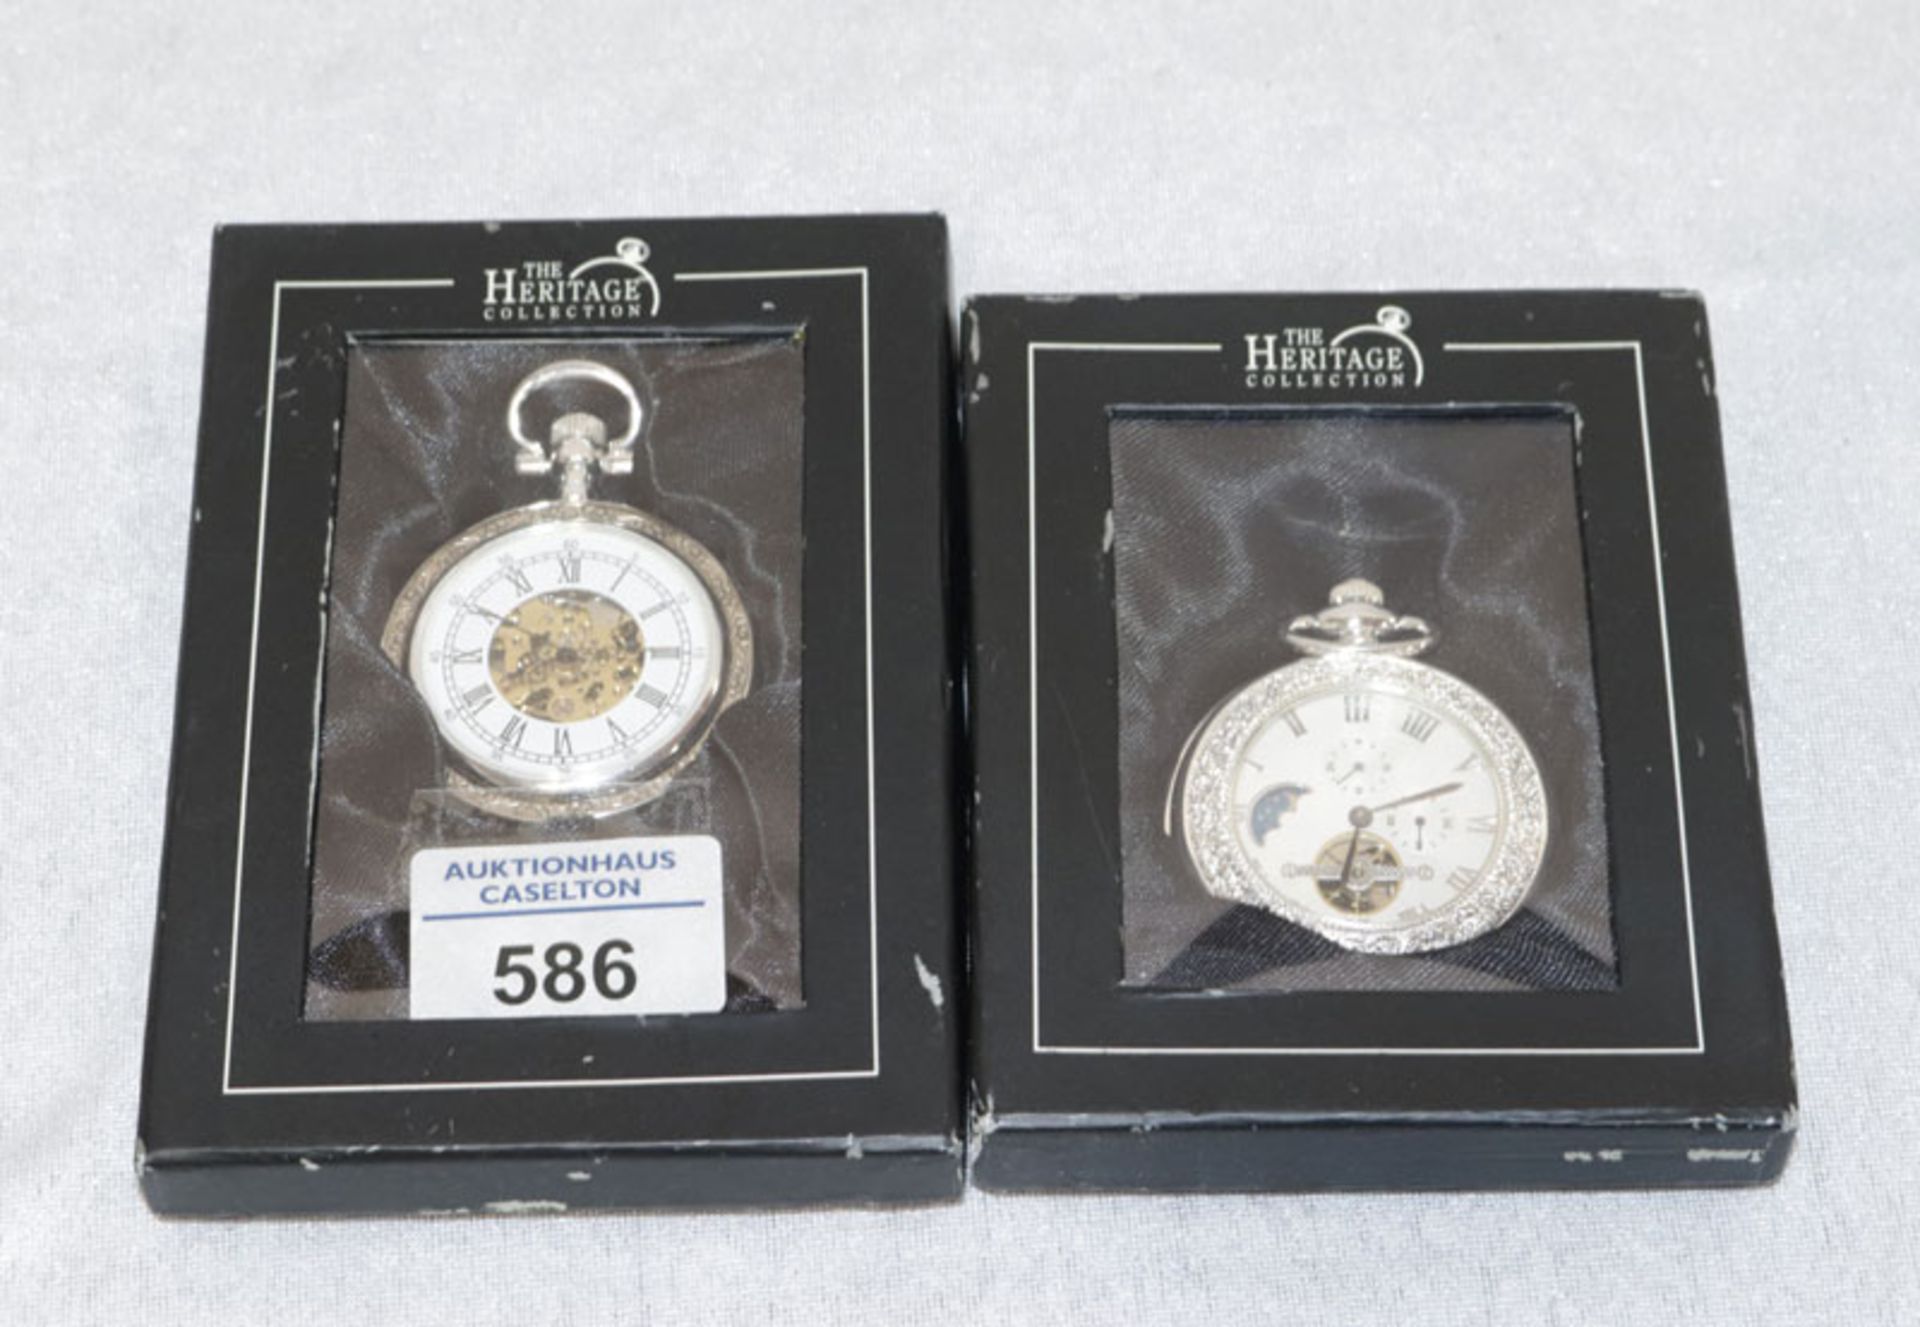 2 Taschenuhren, The Heritage Collection, eine mit Uhrenkette, neuwertig in Etuis